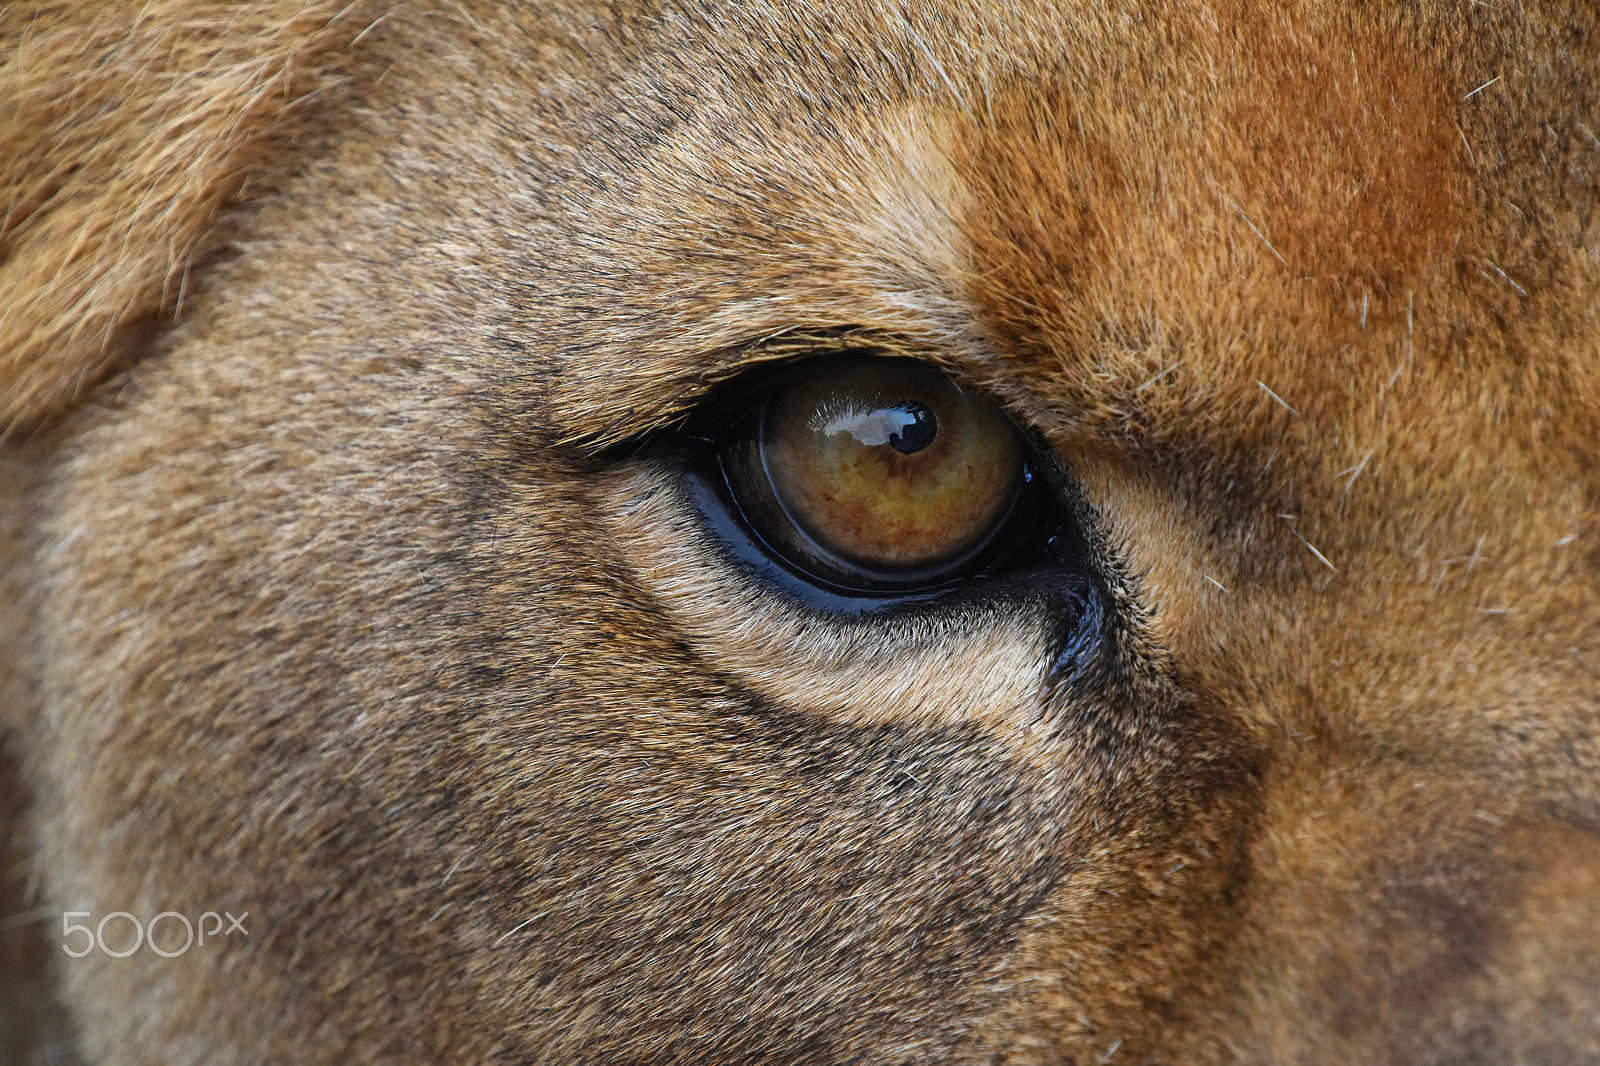 Nikon D5500 + Nikon AF-S DX Nikkor 18-300mm F3.5-6.3G ED VR sample photo. African lioness eye extreme close up photography